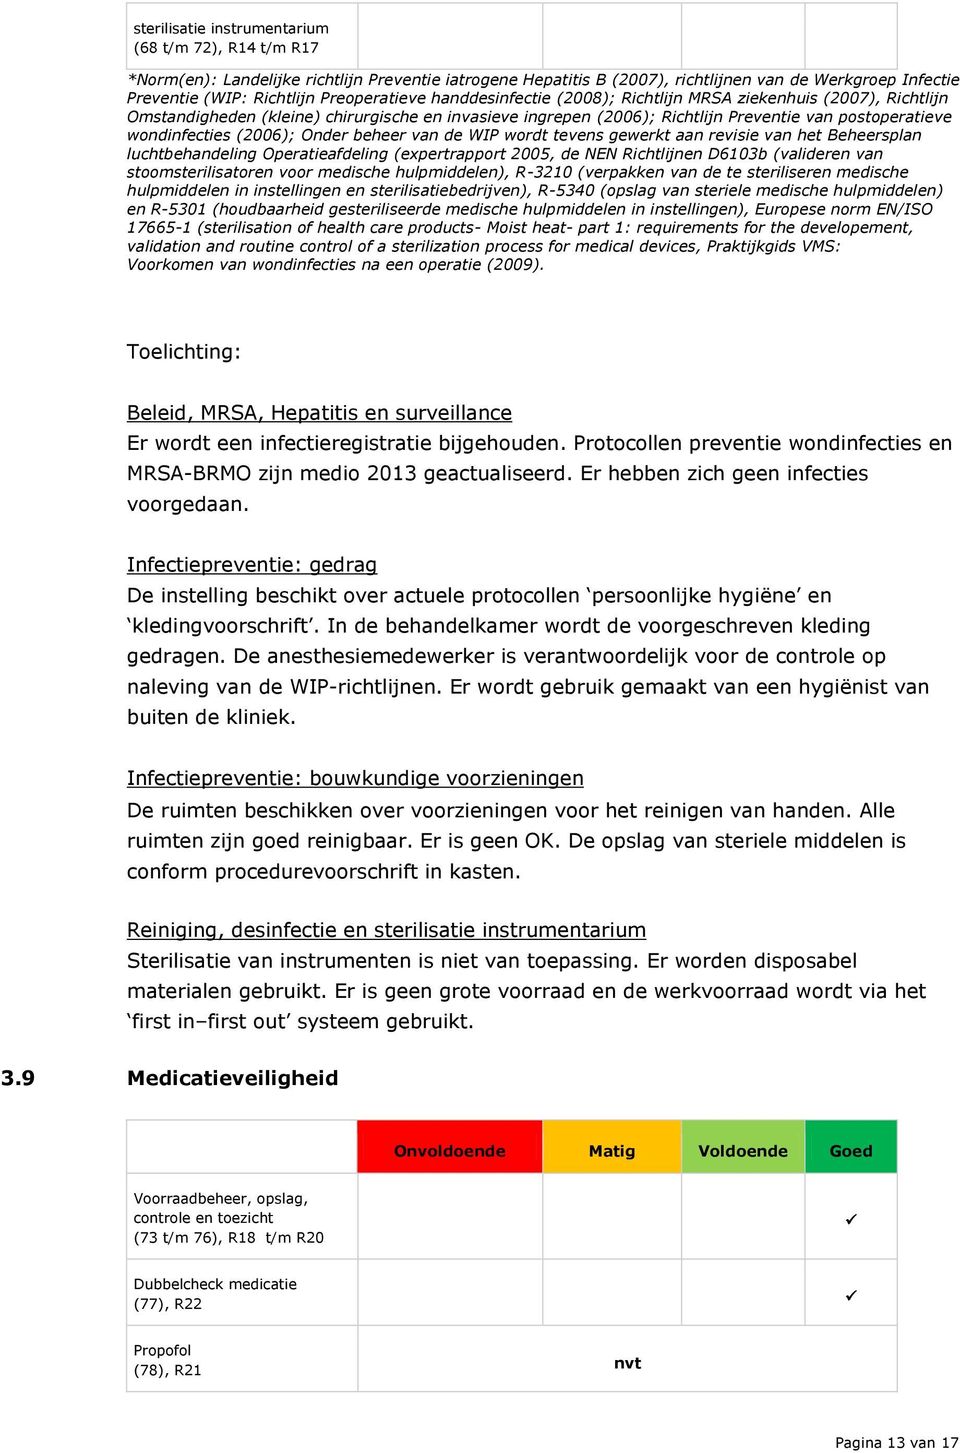 wondinfecties (2006); Onder beheer van de WIP wordt tevens gewerkt aan revisie van het Beheersplan luchtbehandeling Operatieafdeling (expertrapport 2005, de NEN Richtlijnen D6103b (valideren van